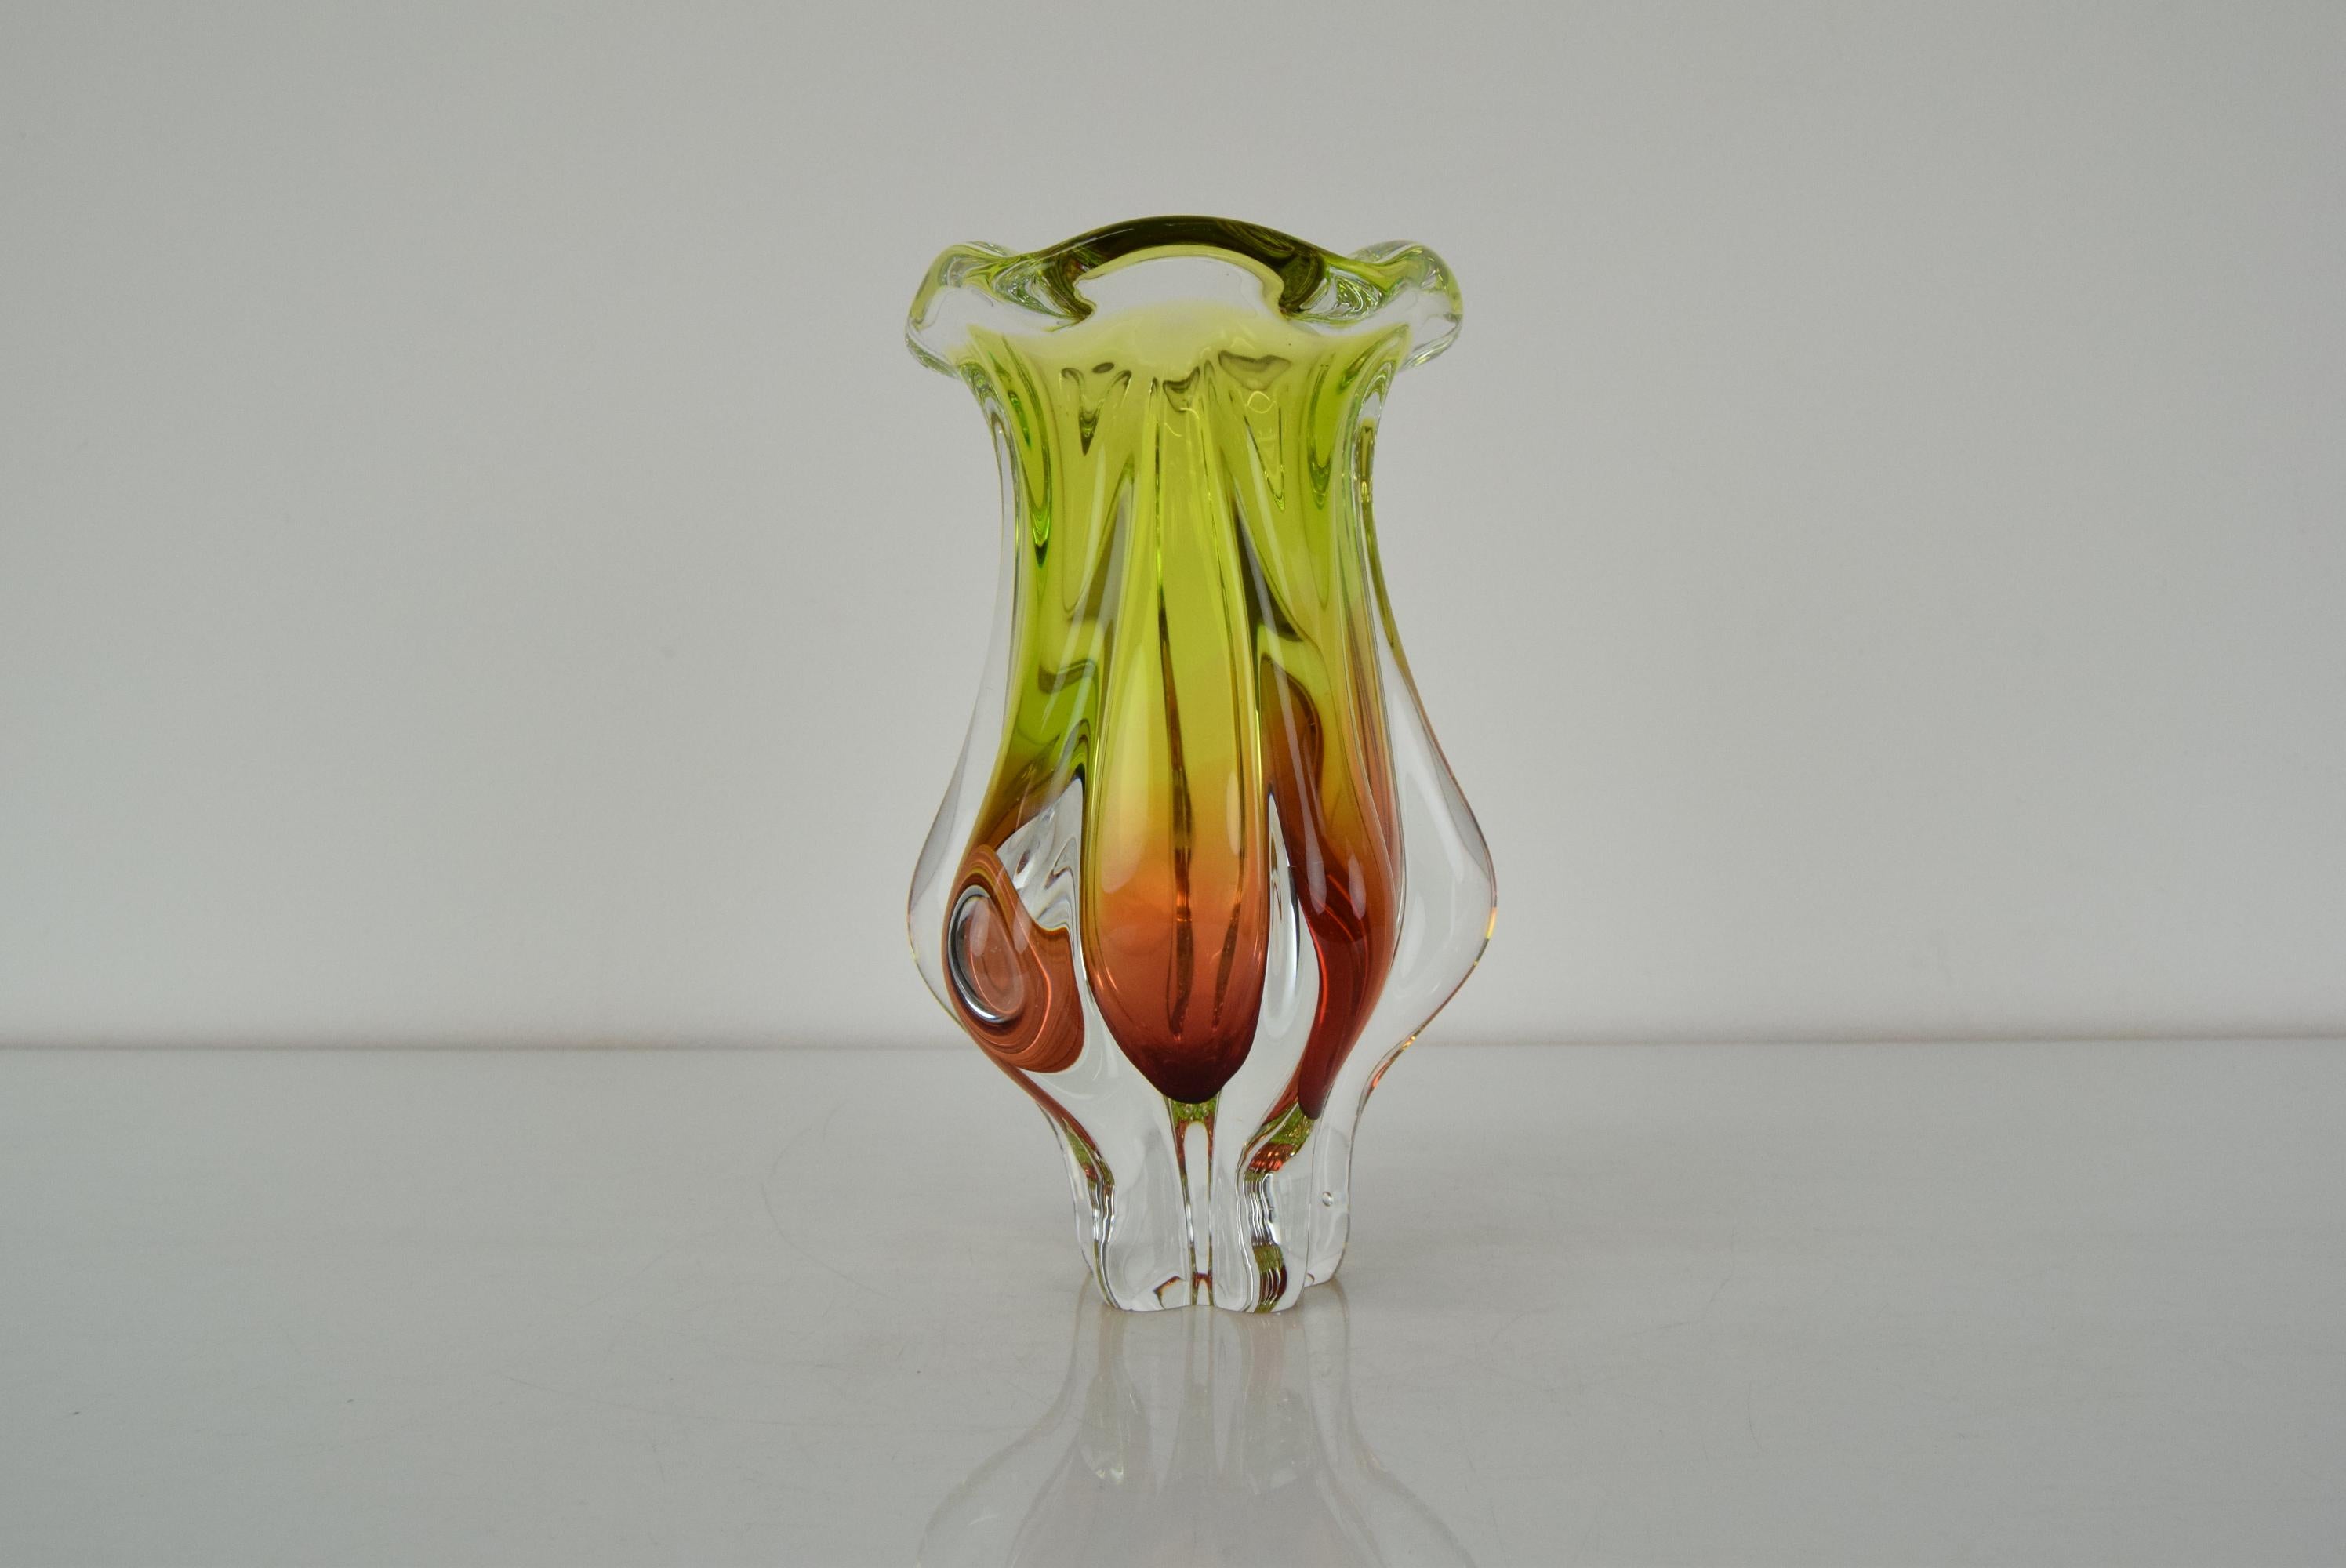 Mid-Century Modern Art Glass Vase Designed by Josef Hospodka for Chribska Glassworks, 1960's